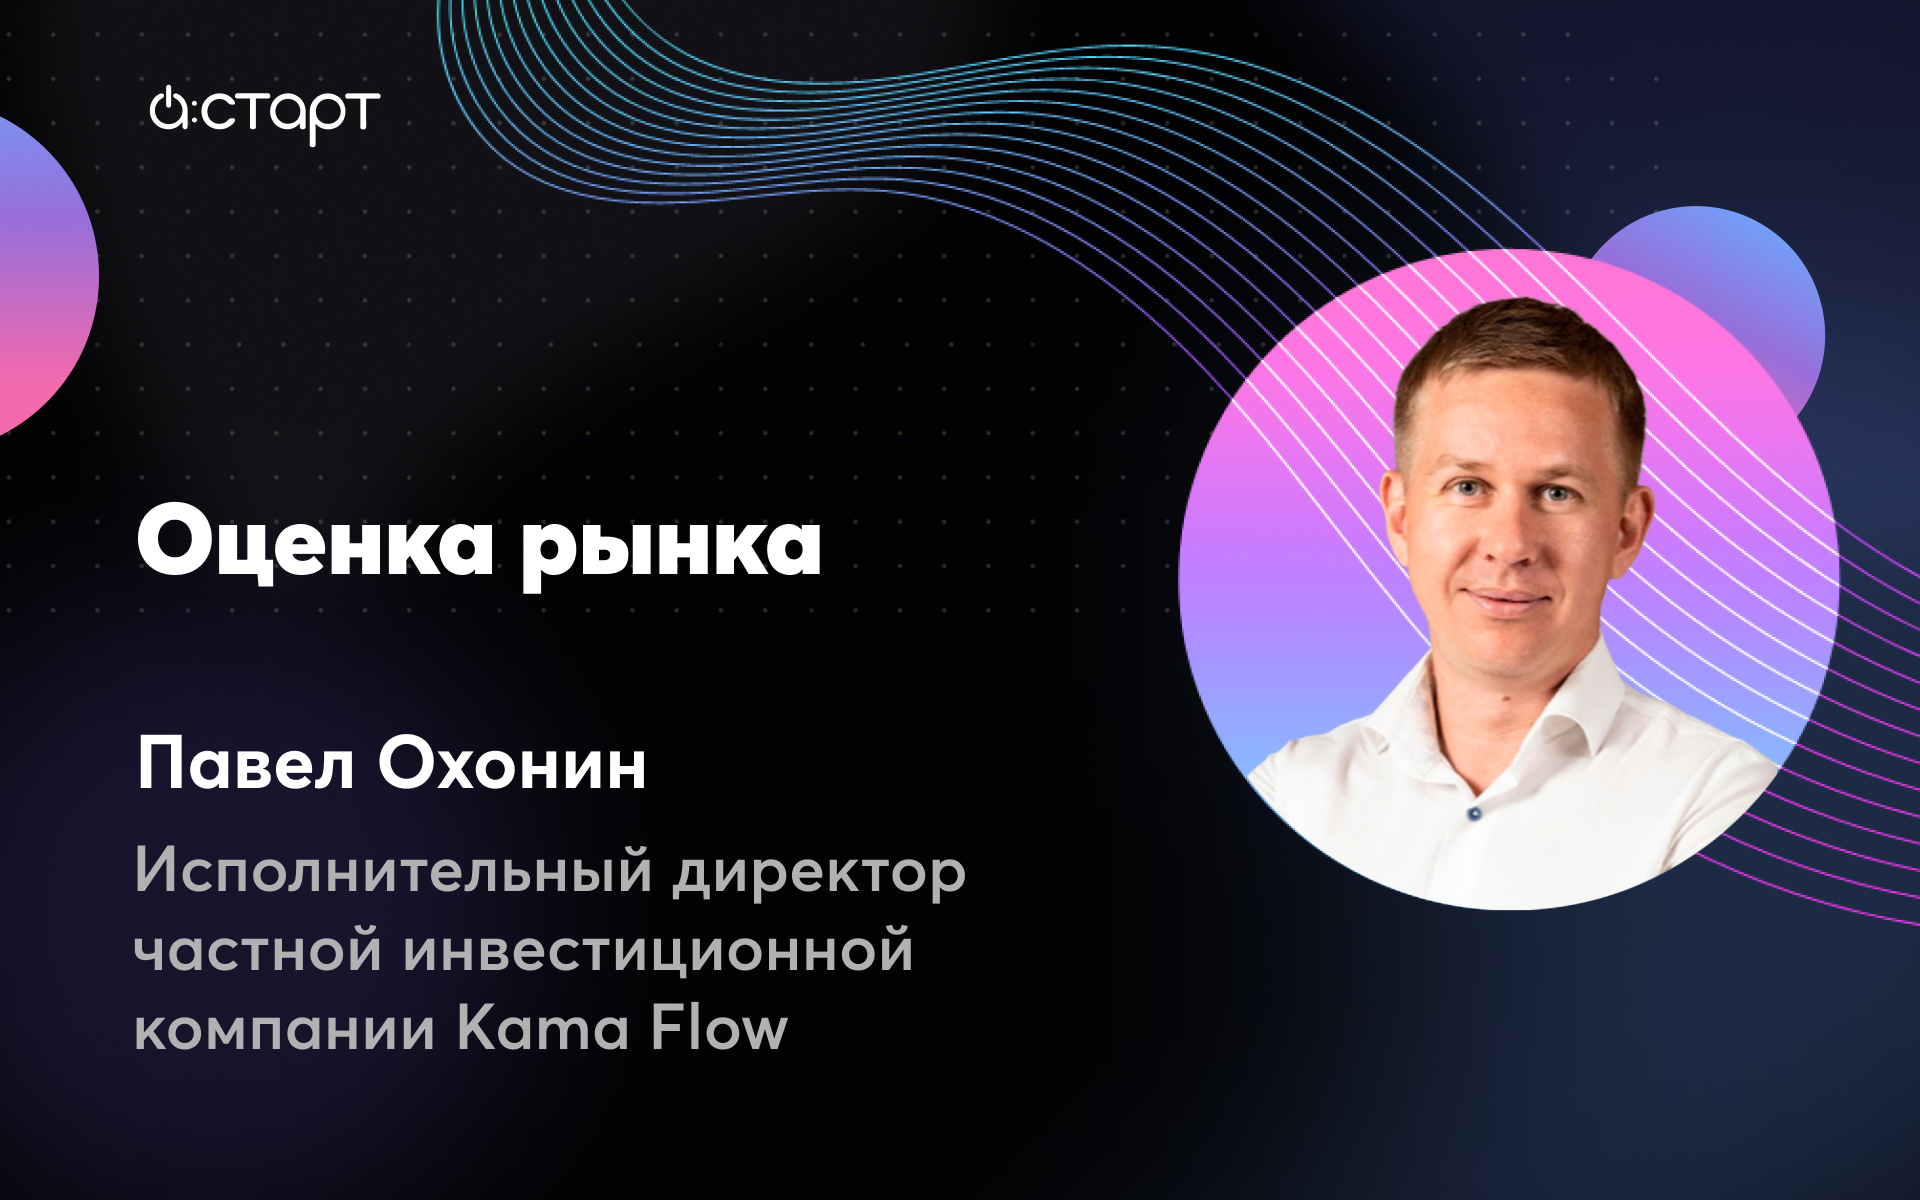 Оценка рынка - Павел Охонин (Исполнительный директор частной инвестиционной компании Kama Flow)